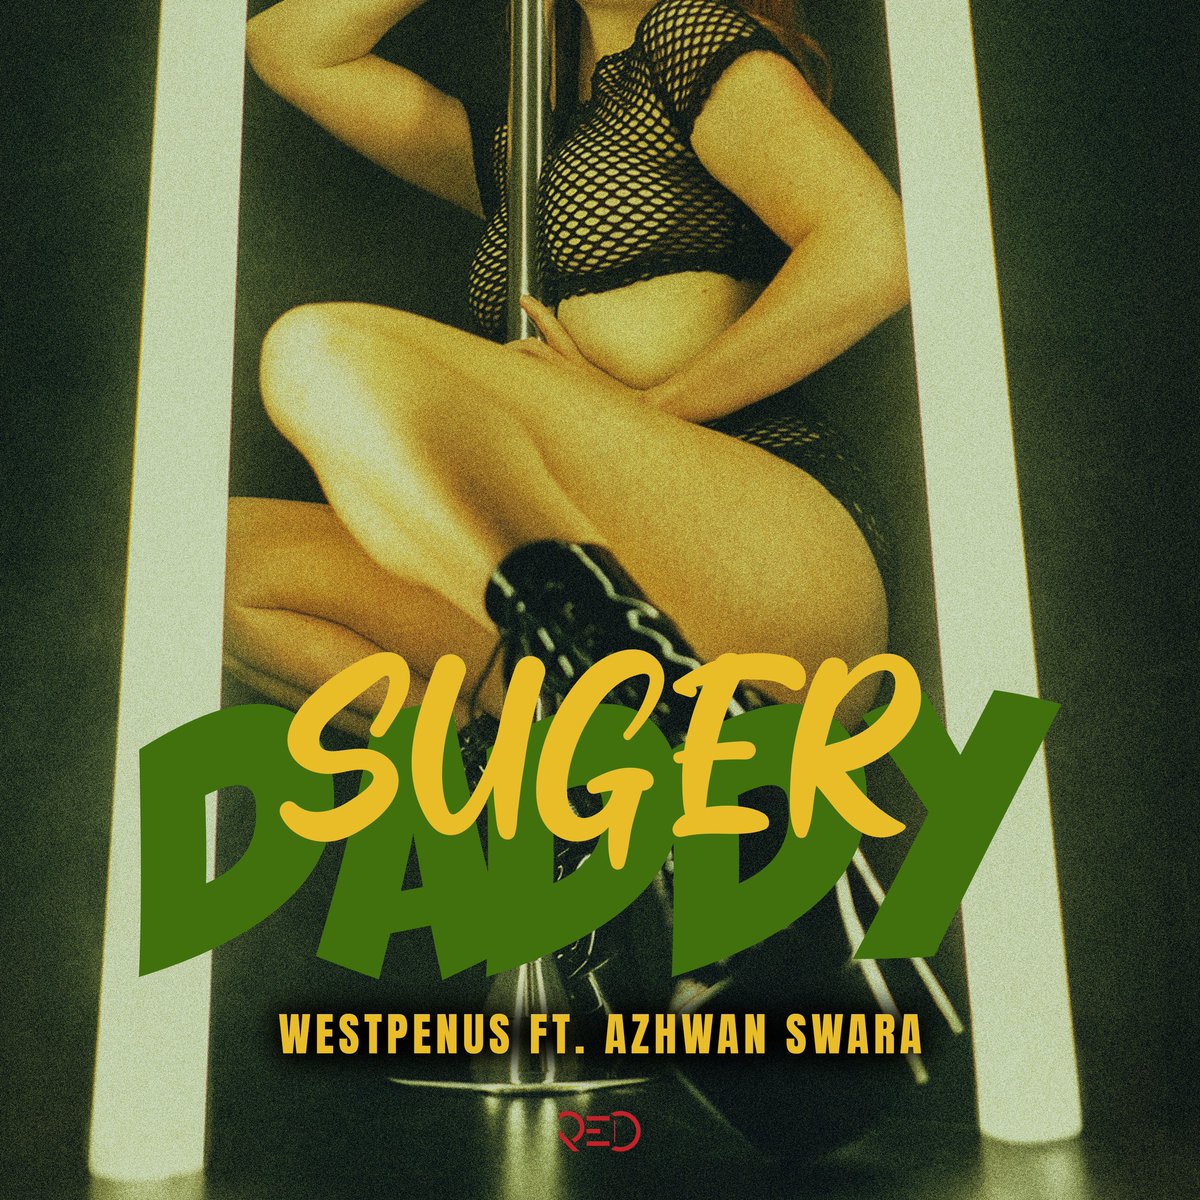 Westpenus ft. Azhwan Swara “Sugar Daddy” di demek nêz de | Yakında!